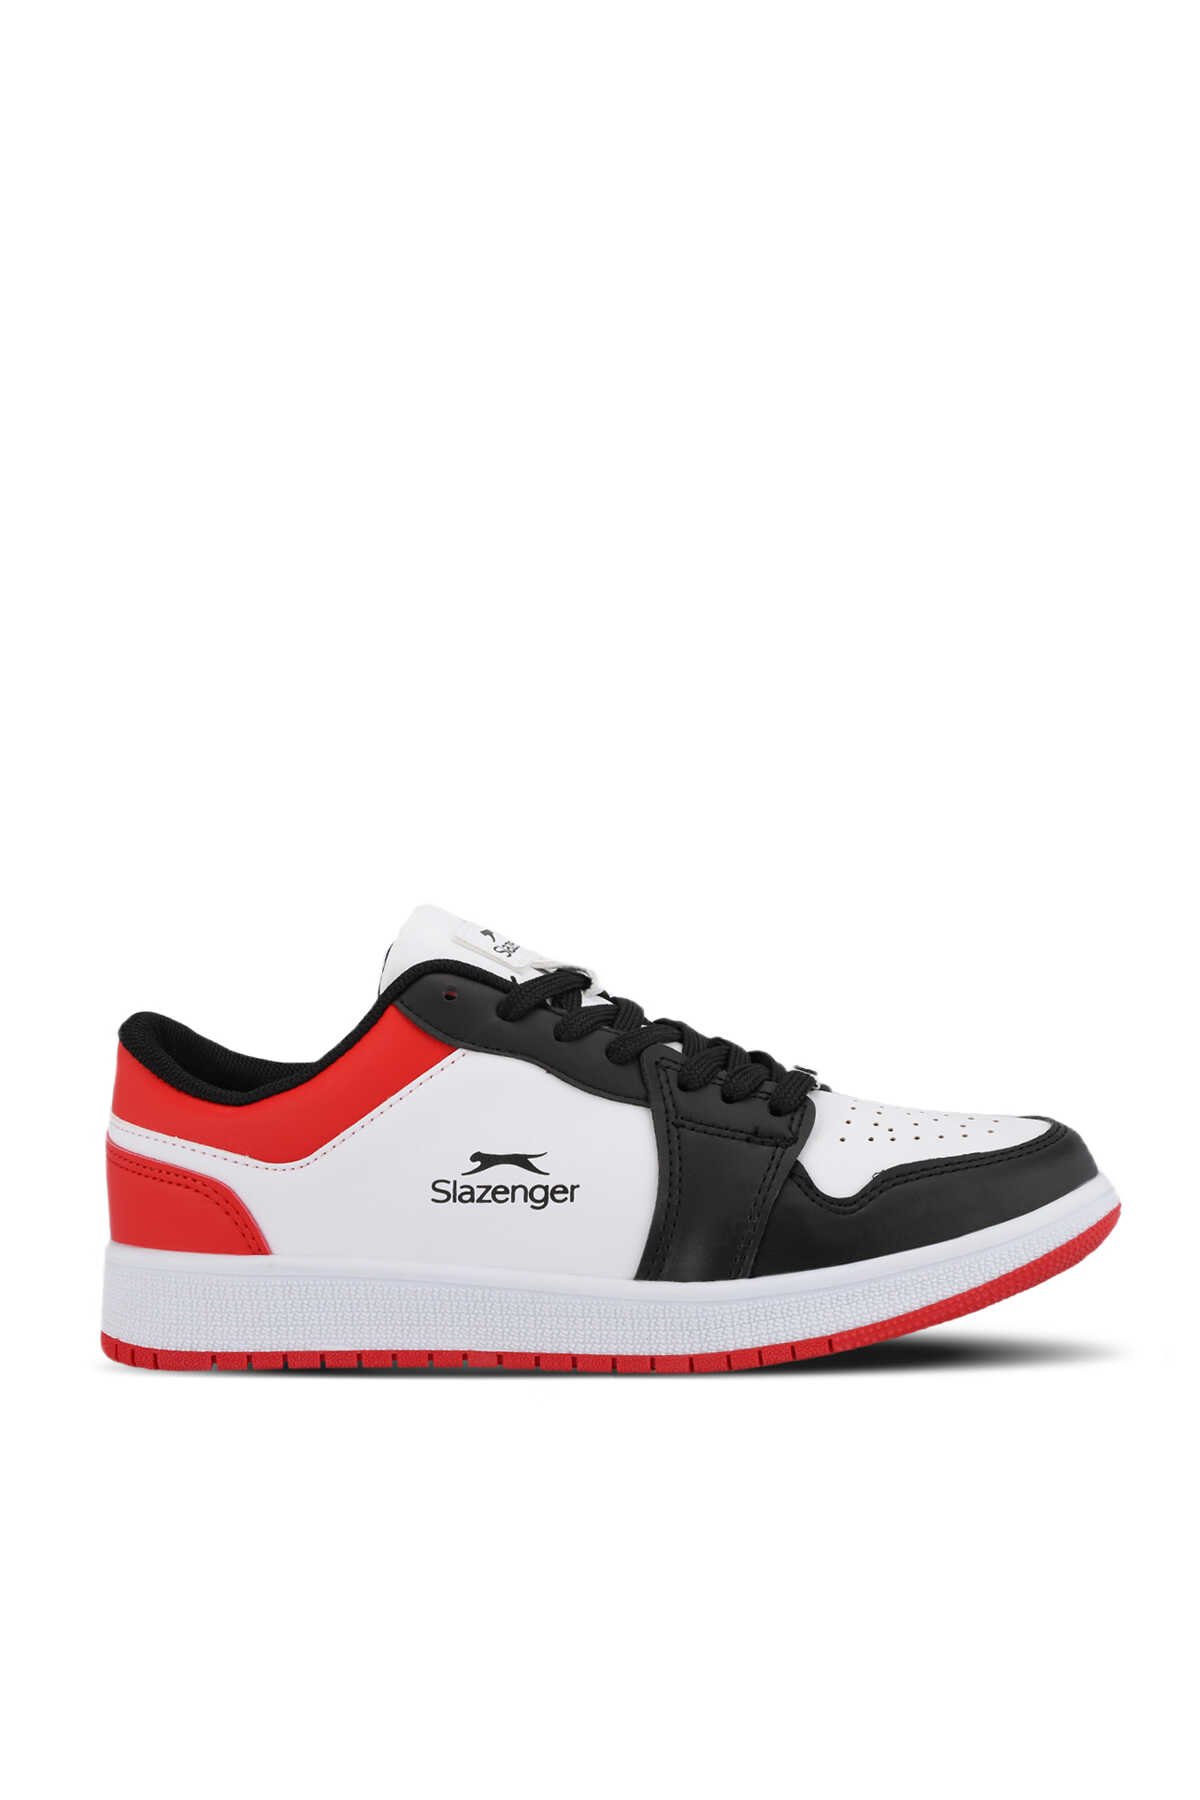 Slazenger - Slazenger PRINCE I Sneaker Kadın Ayakkabı Beyaz / Siyah / Kırmızı